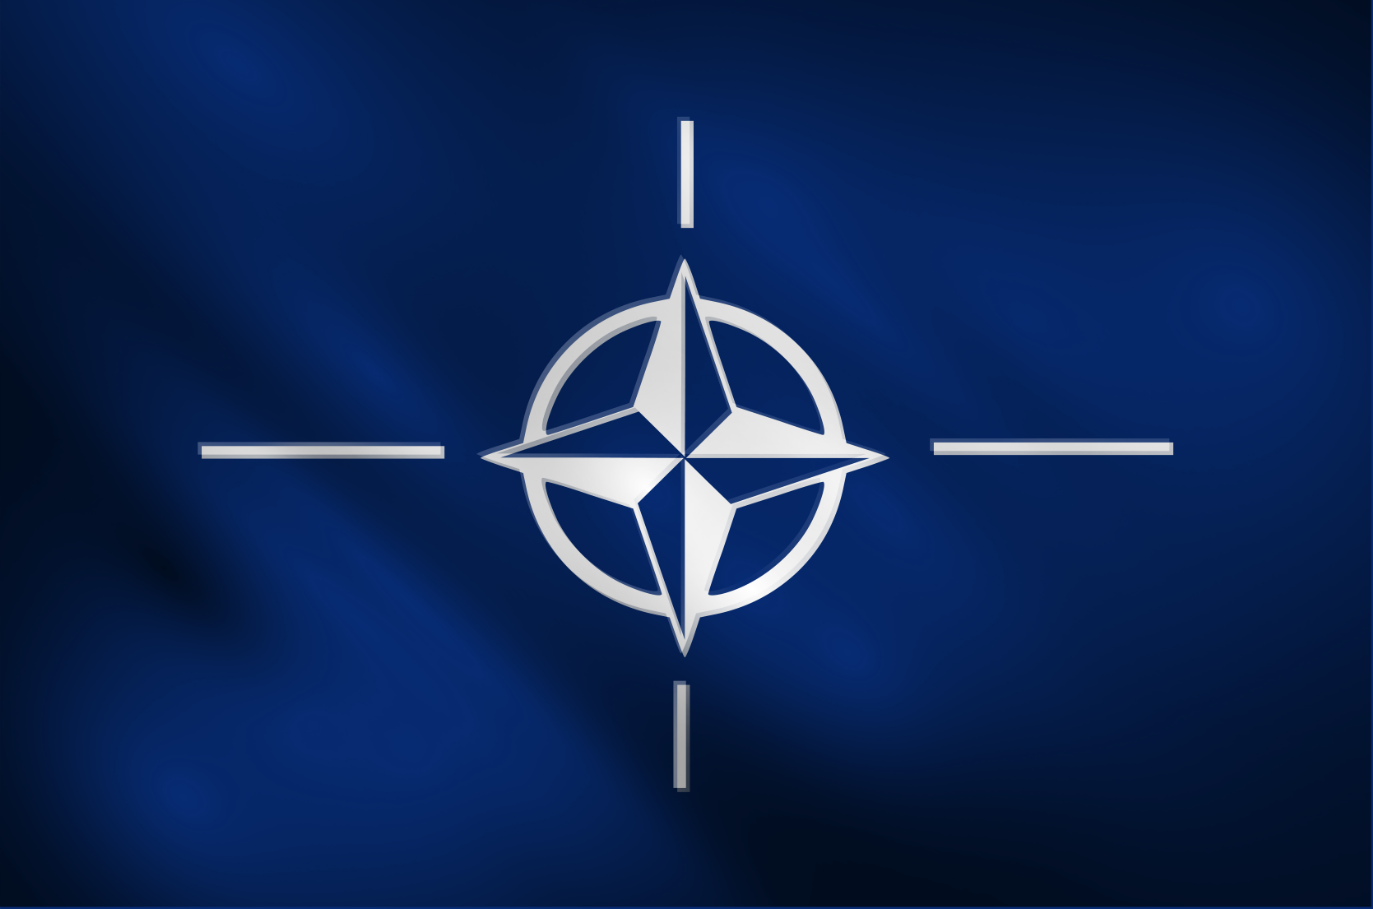 Jogando para a sua torcida, Brasil e NATO